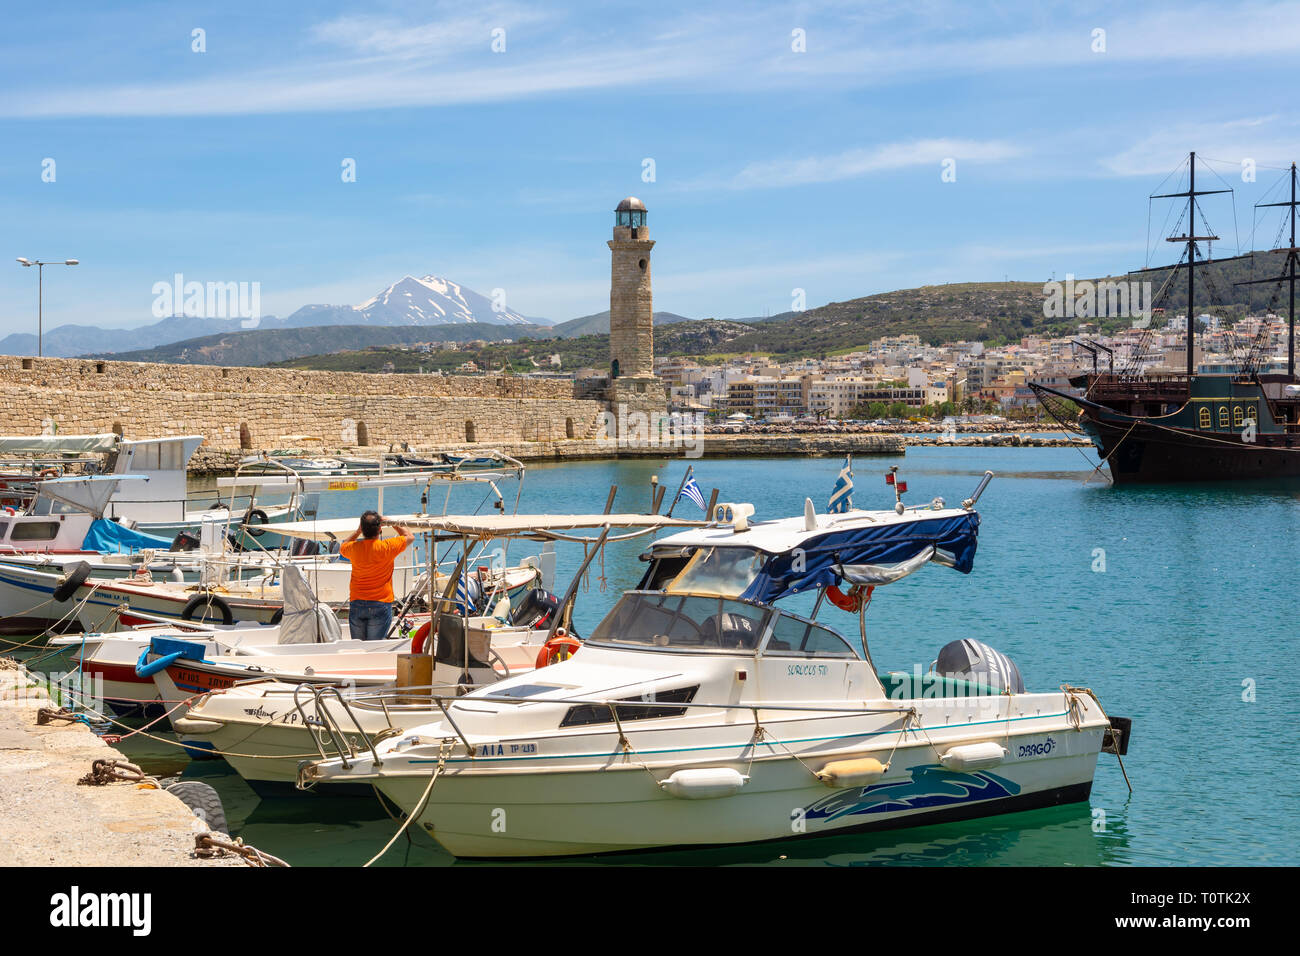 Crète, Grèce - 1 mai 2015 : bateaux de pêche au port de Réthymnon avec phare en arrière-plan. L'île de Crète, Grèce, Europe Banque D'Images